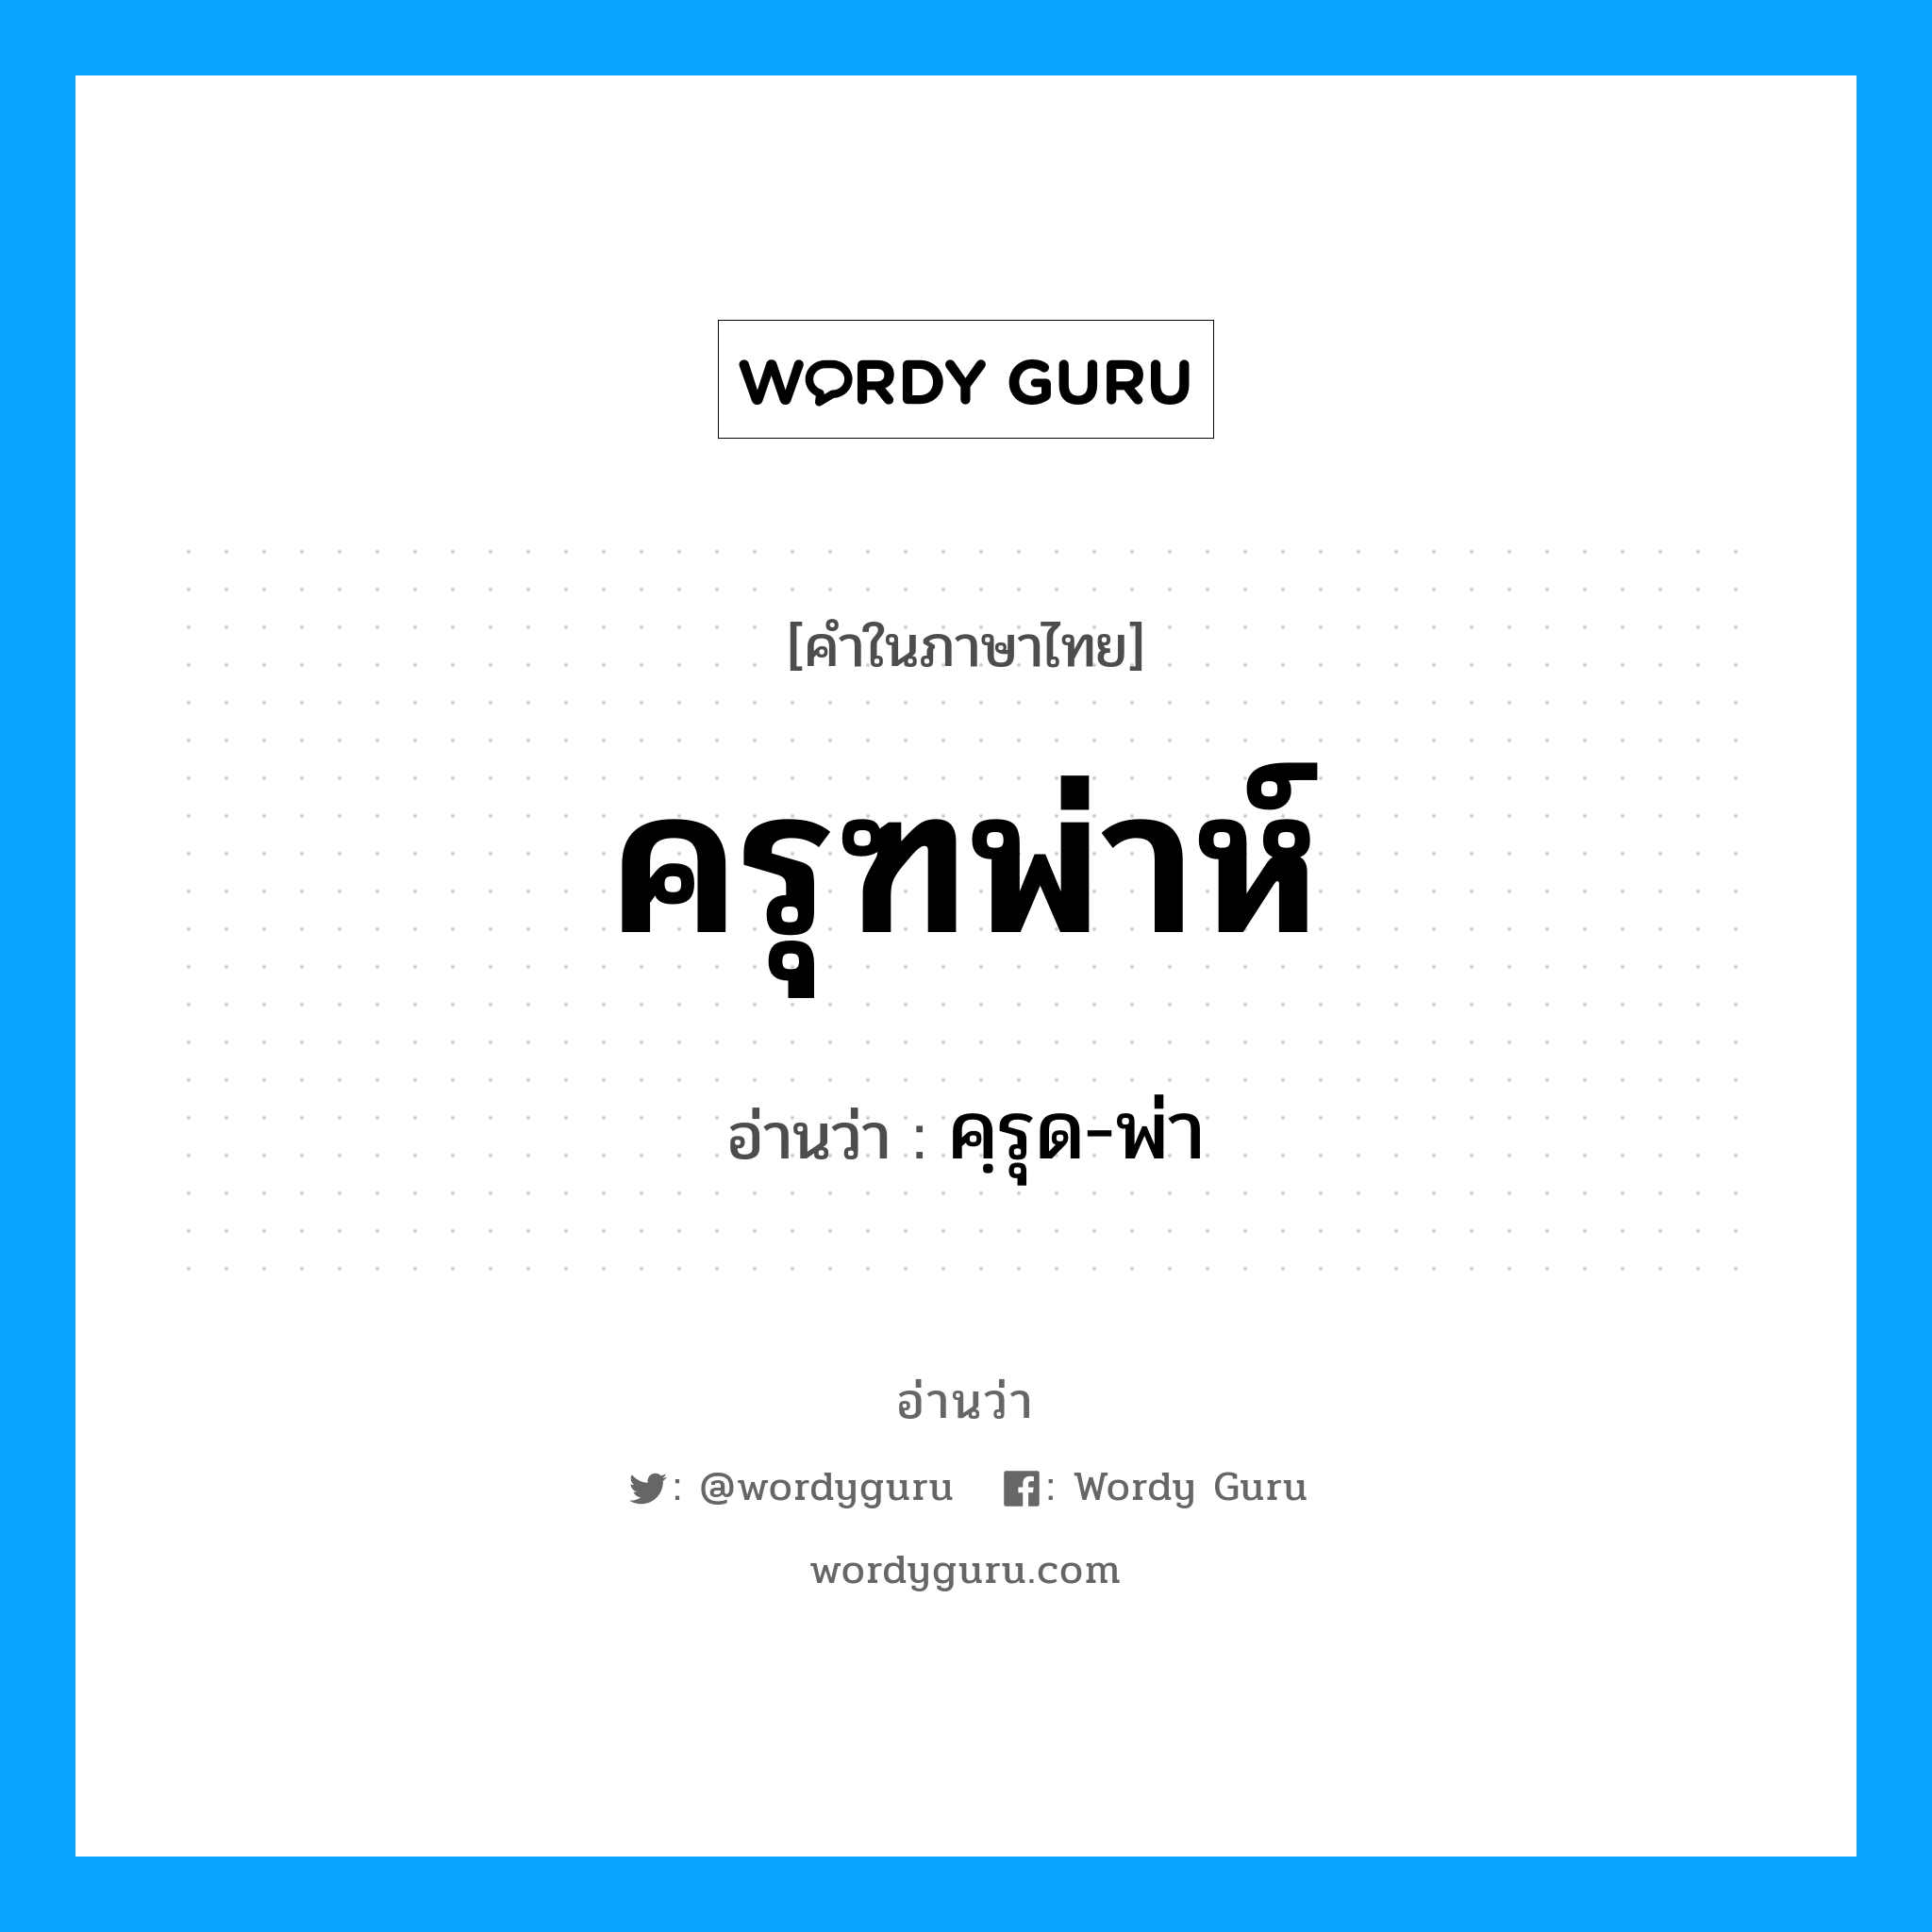 คฺรุด-พ่า เป็นคำอ่านของคำไหน?, คำในภาษาไทย คฺรุด-พ่า อ่านว่า ครุฑพ่าห์